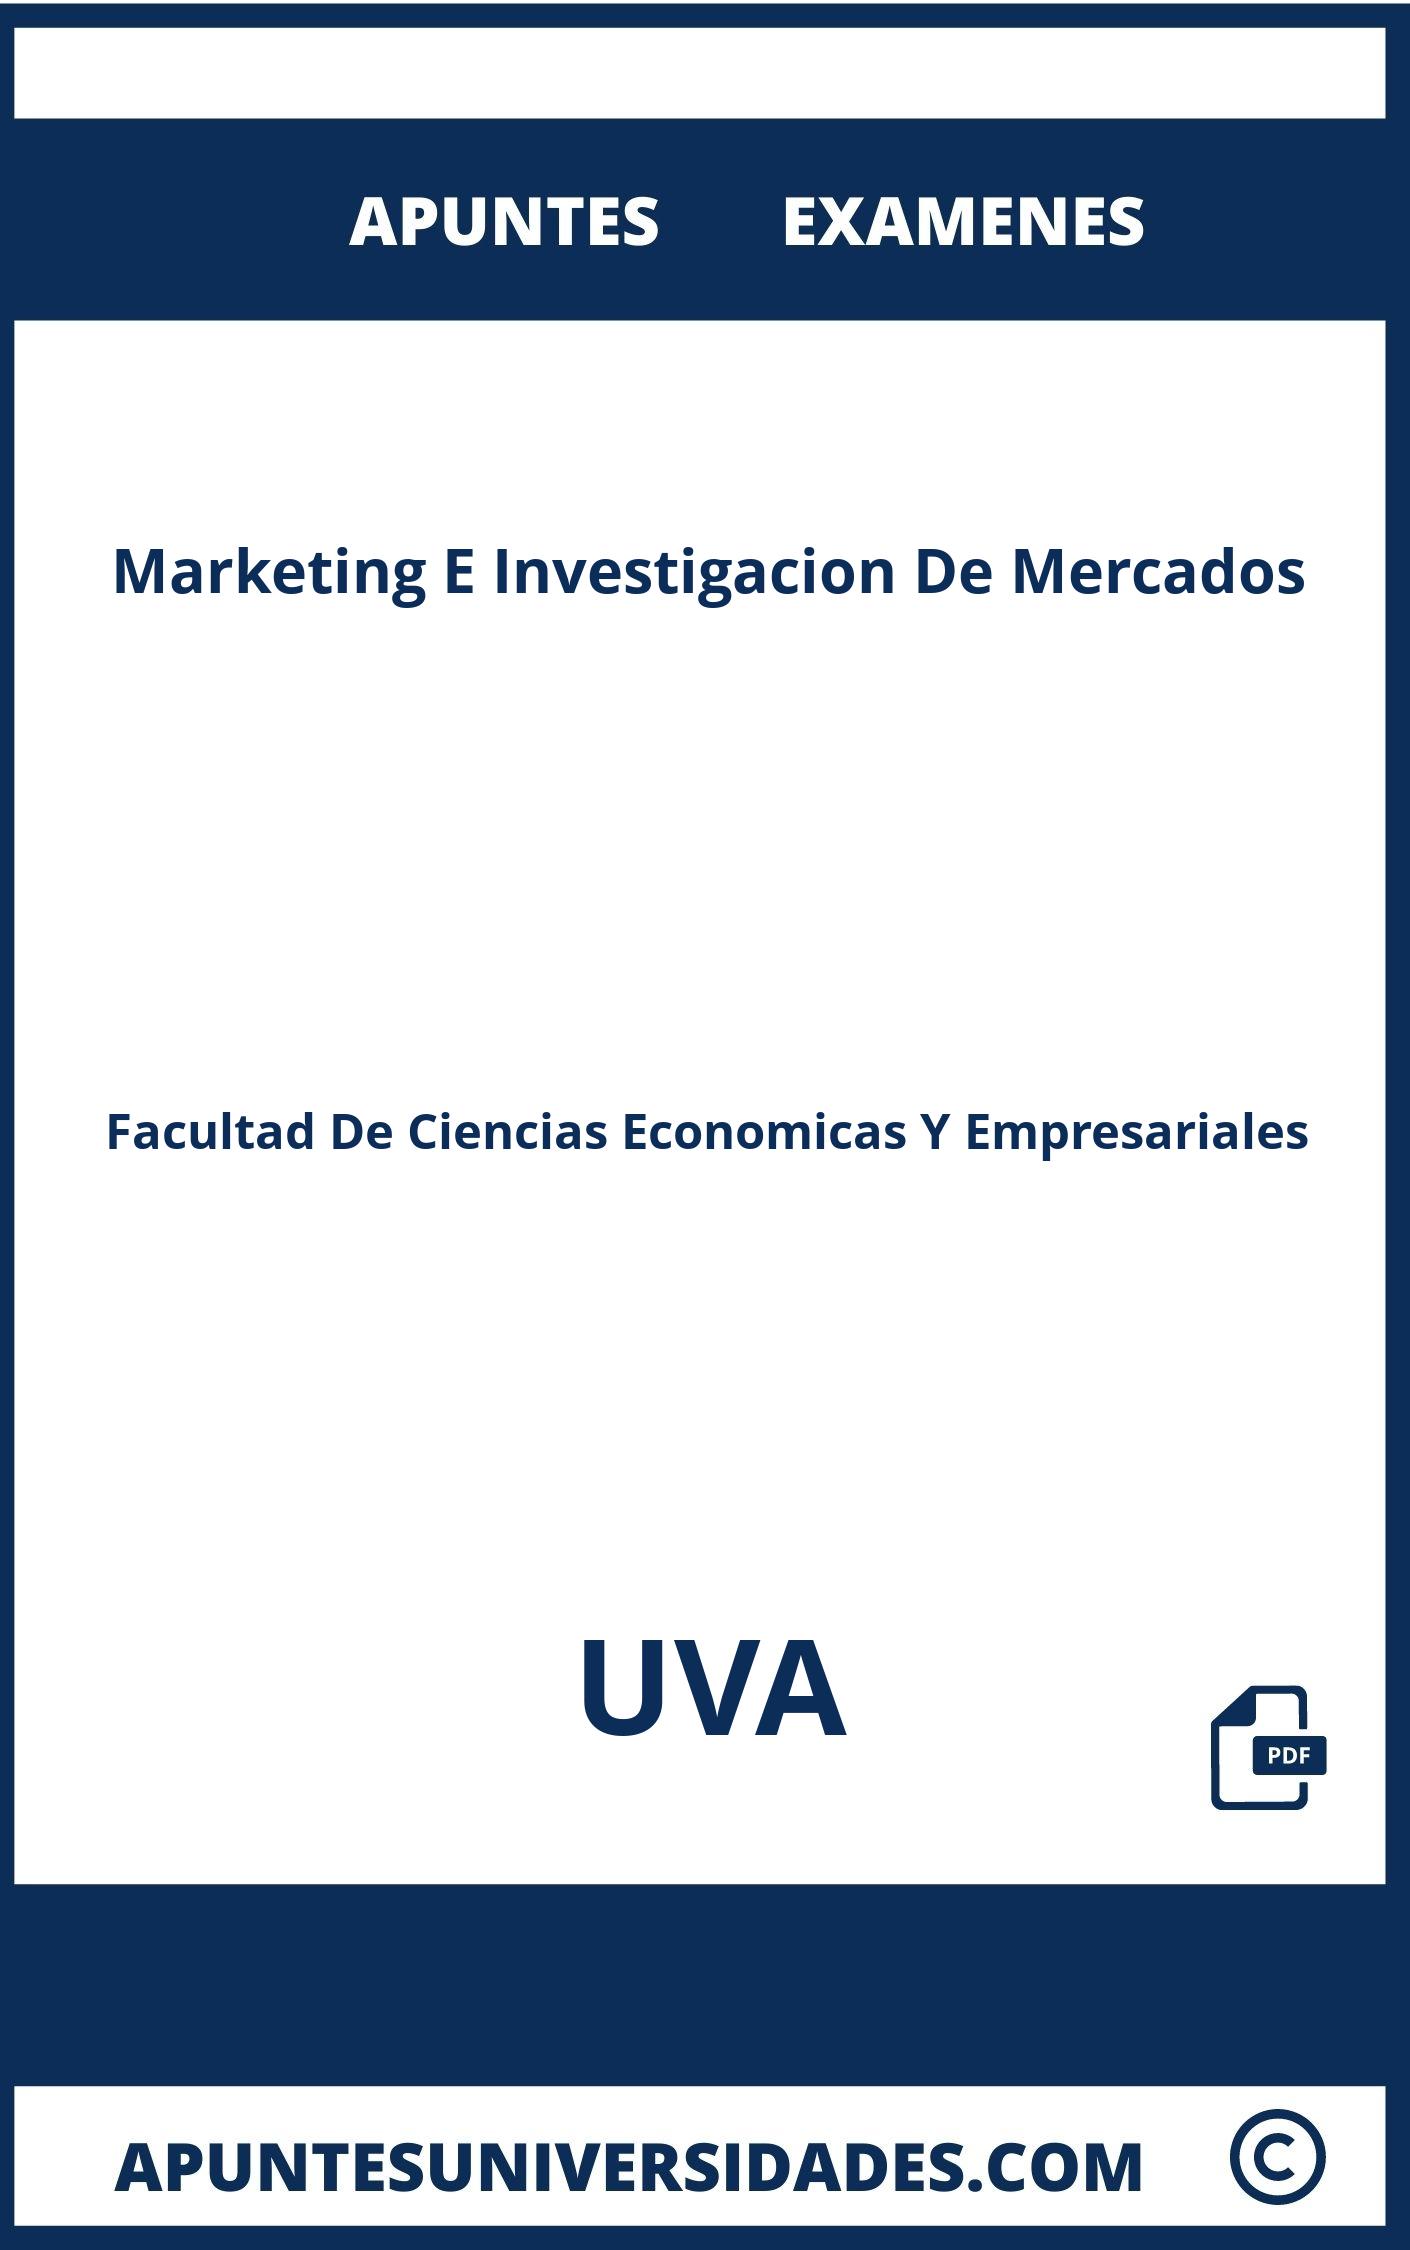 Examenes y Apuntes de Marketing E Investigacion De Mercados UVA